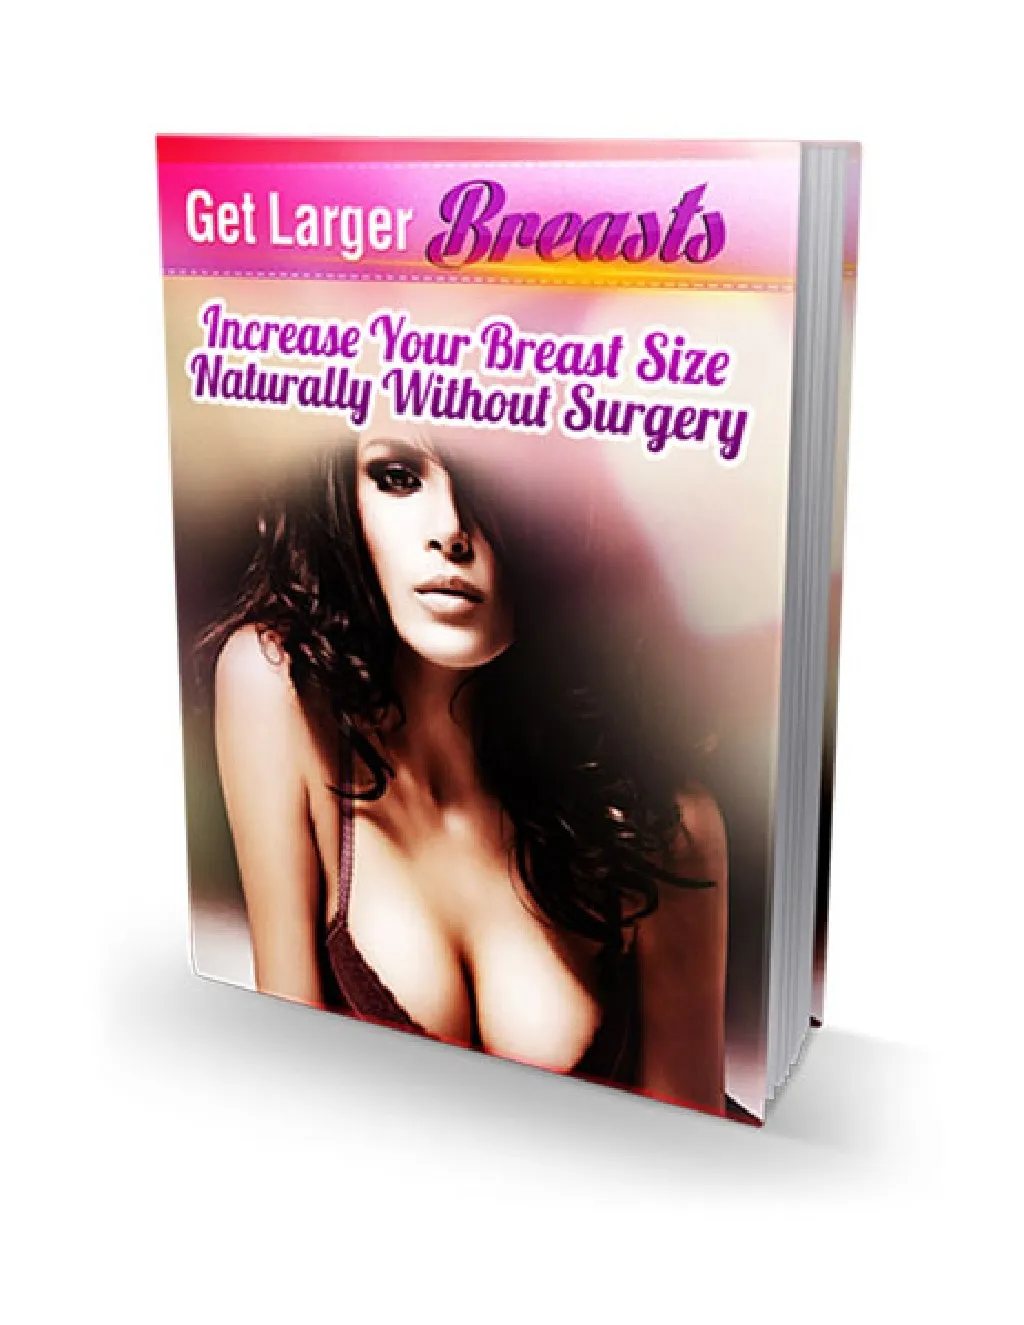 Breast imaging